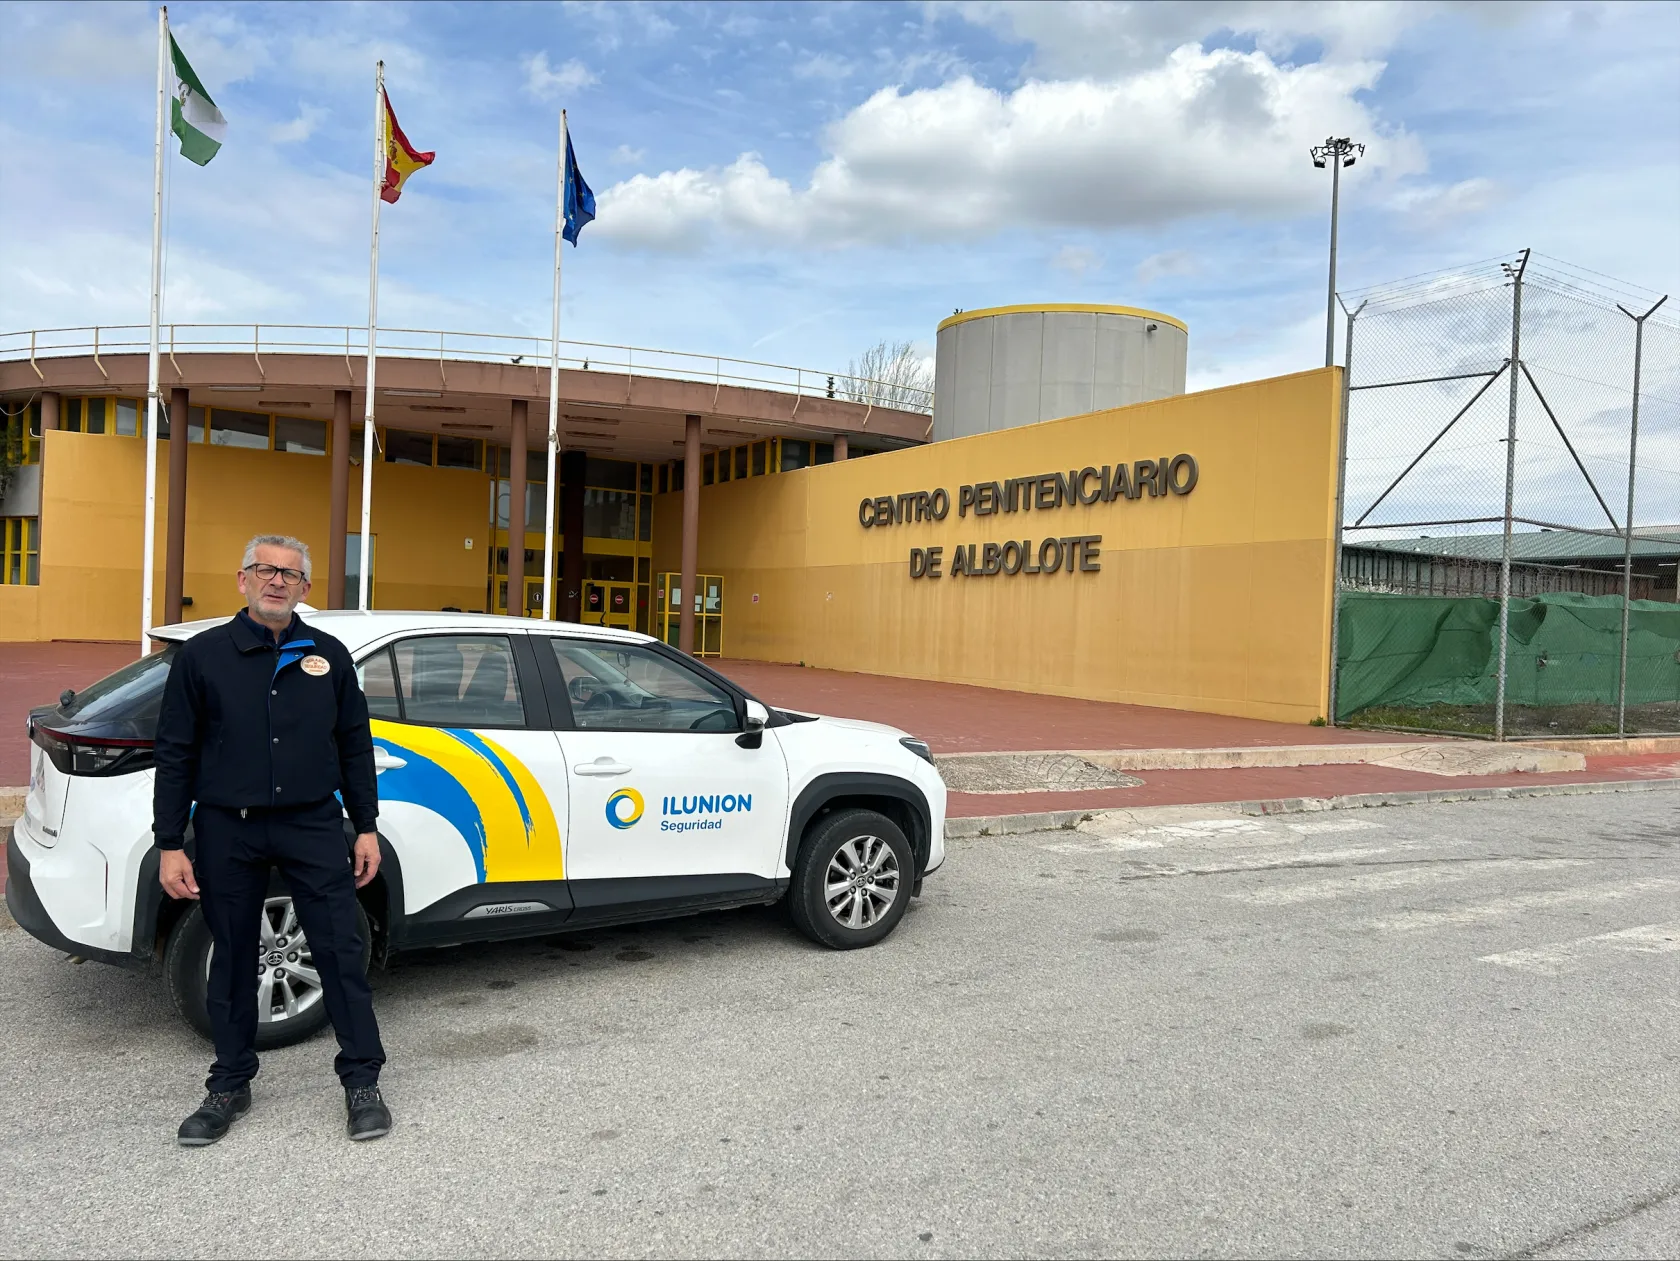 Un vigilante de seguridad de ILUNION con su vehículo, frente al centro penitenciario de Albolote 